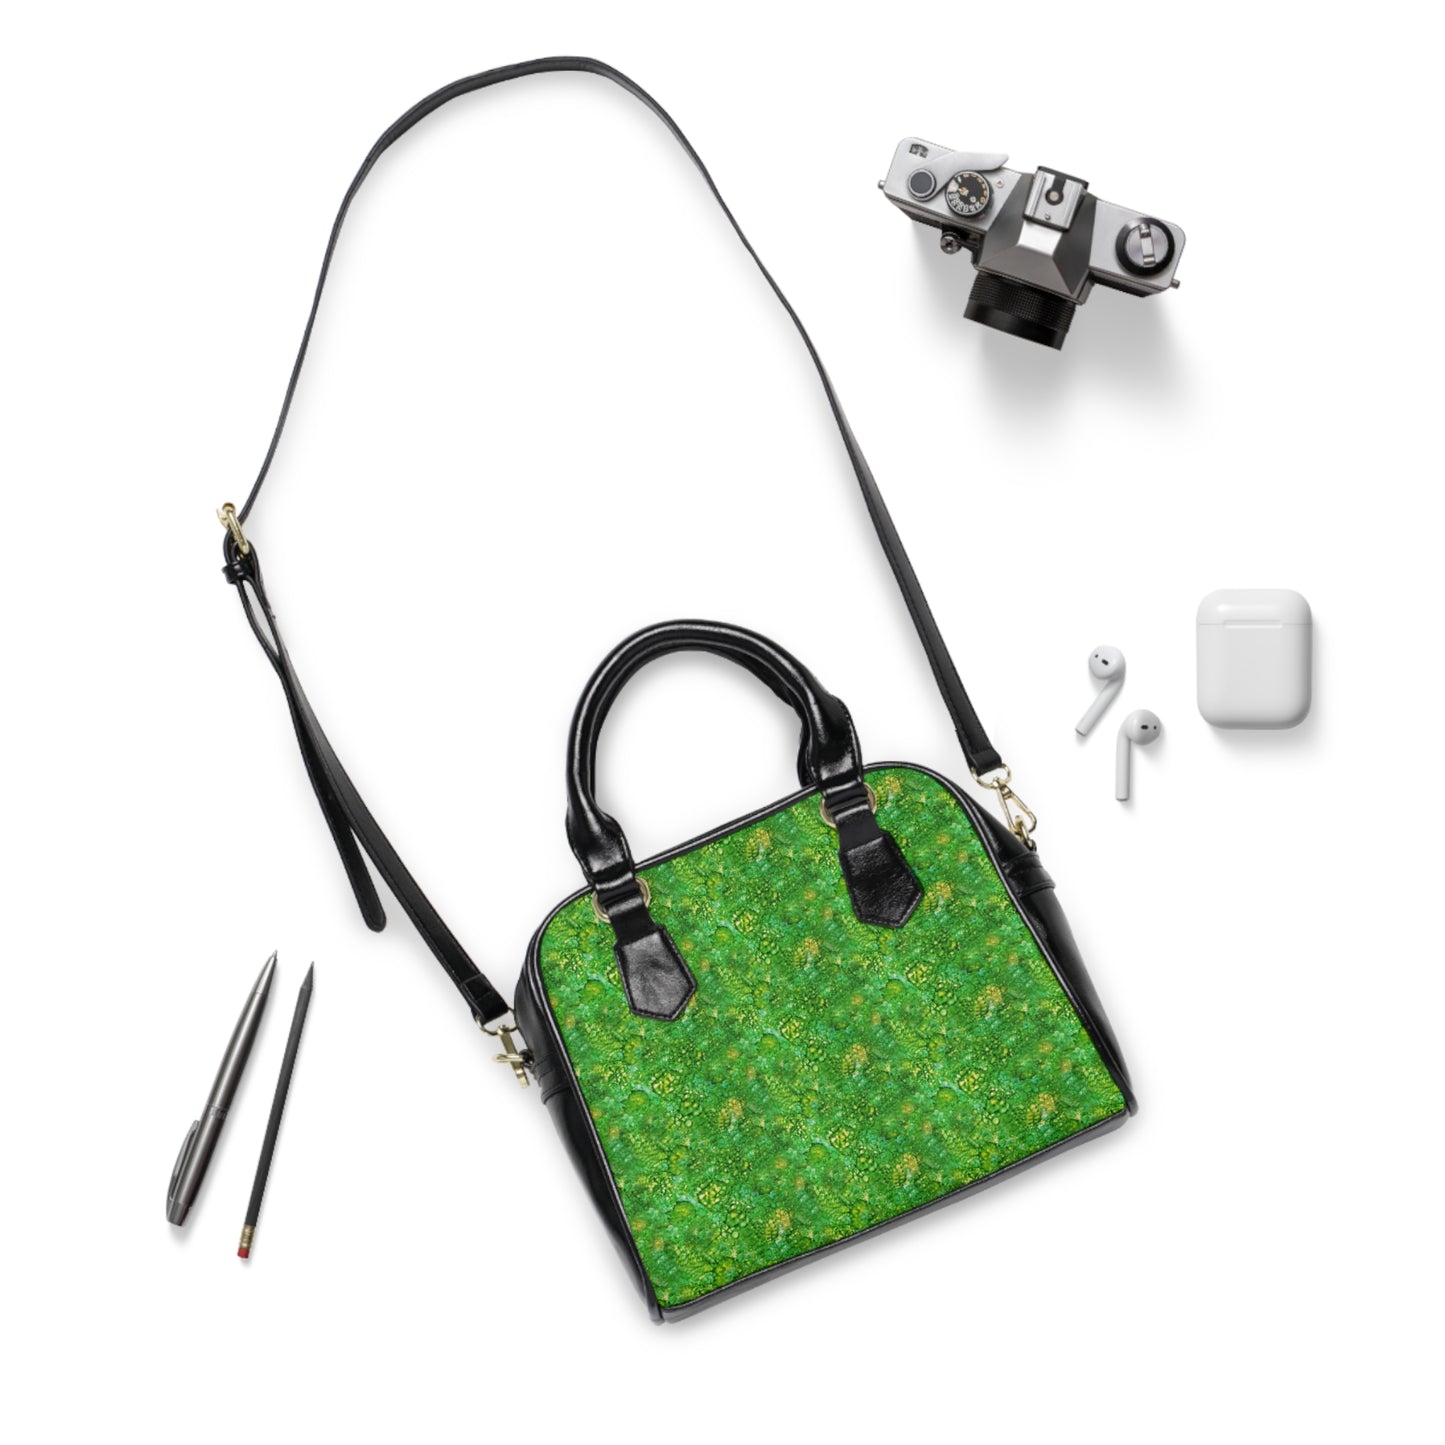 Shoulder Handbag - Emerald Dreams